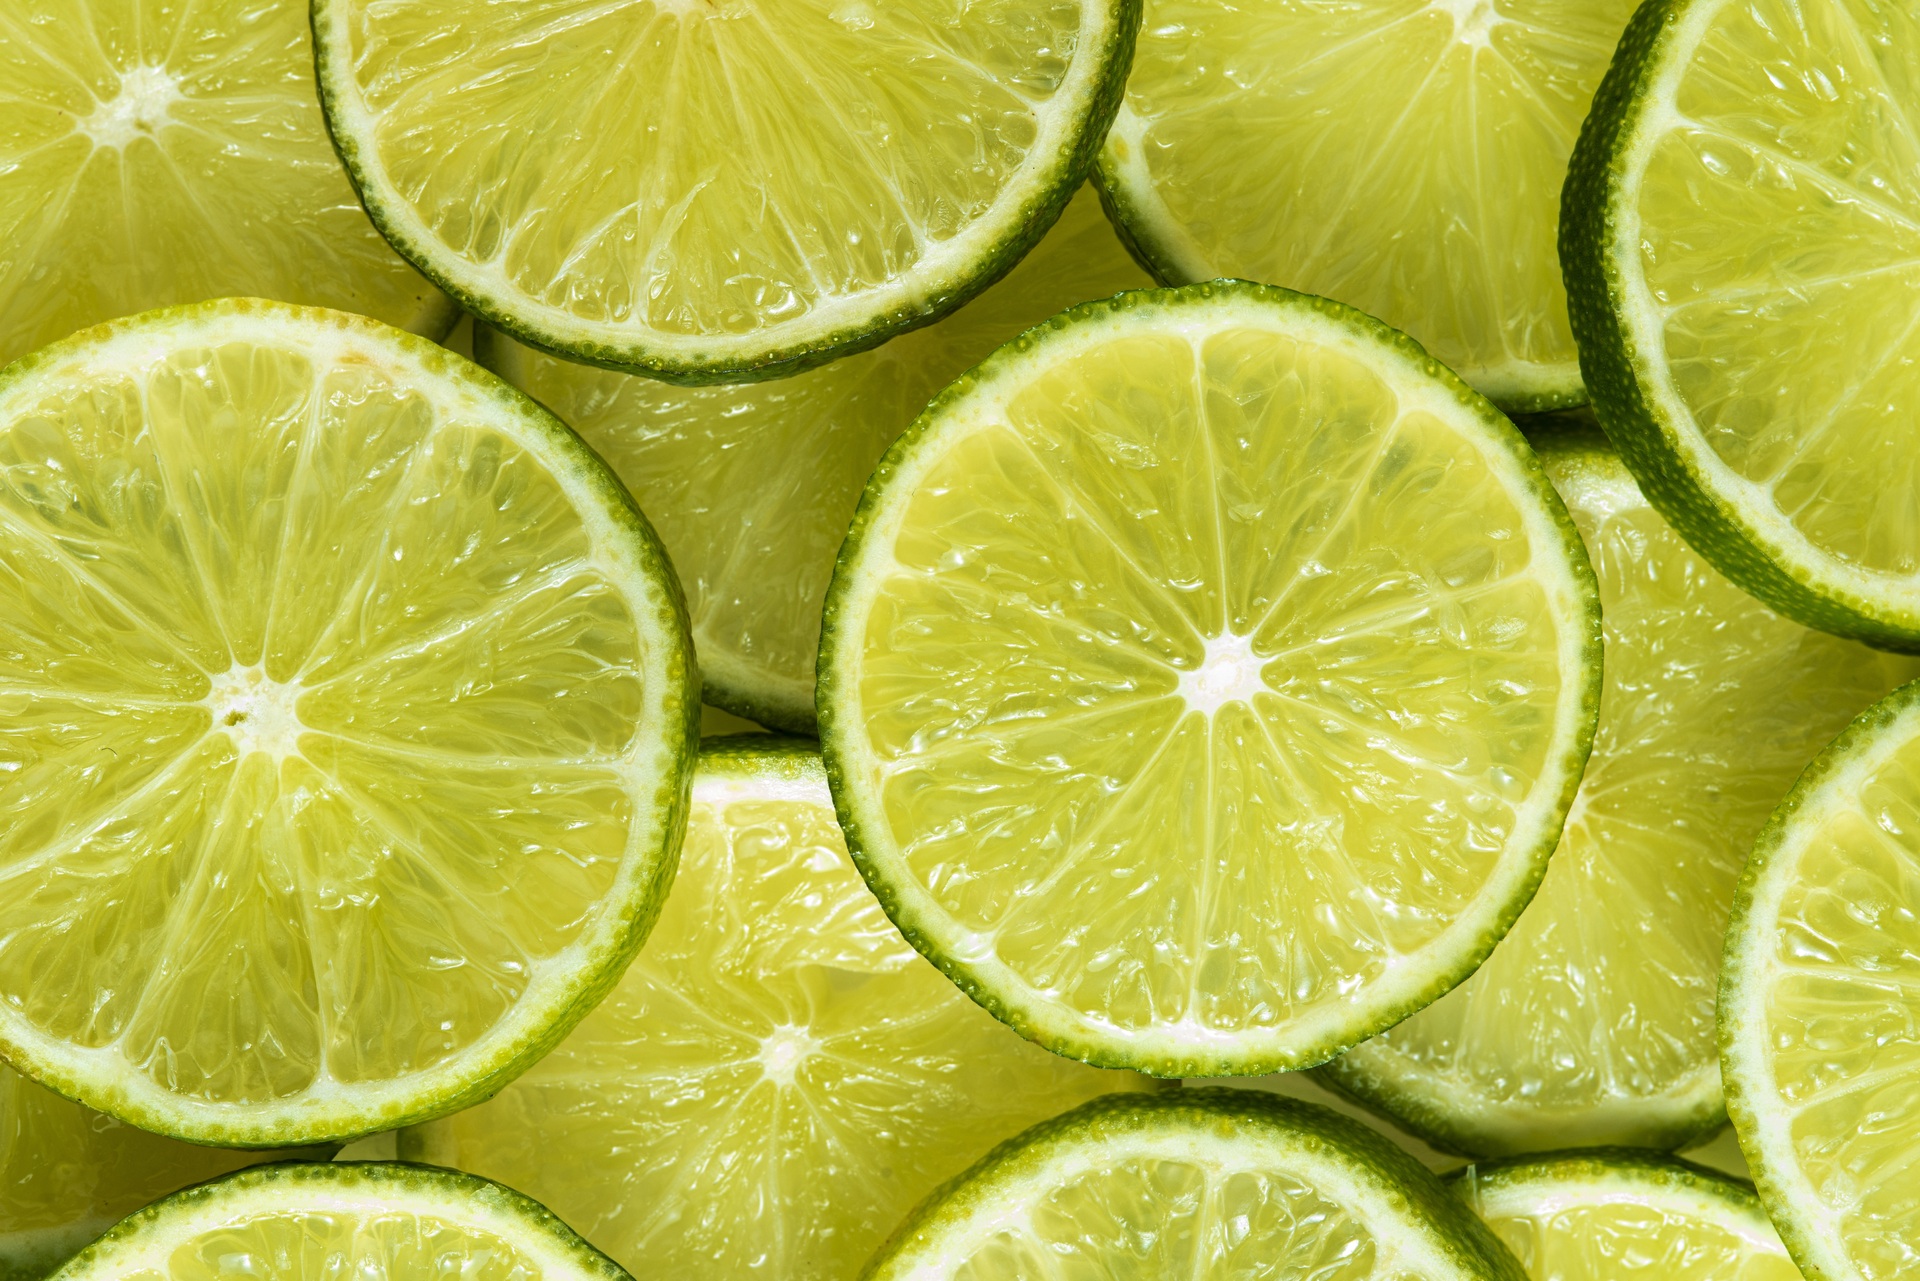 Beneficios del limón para la salud